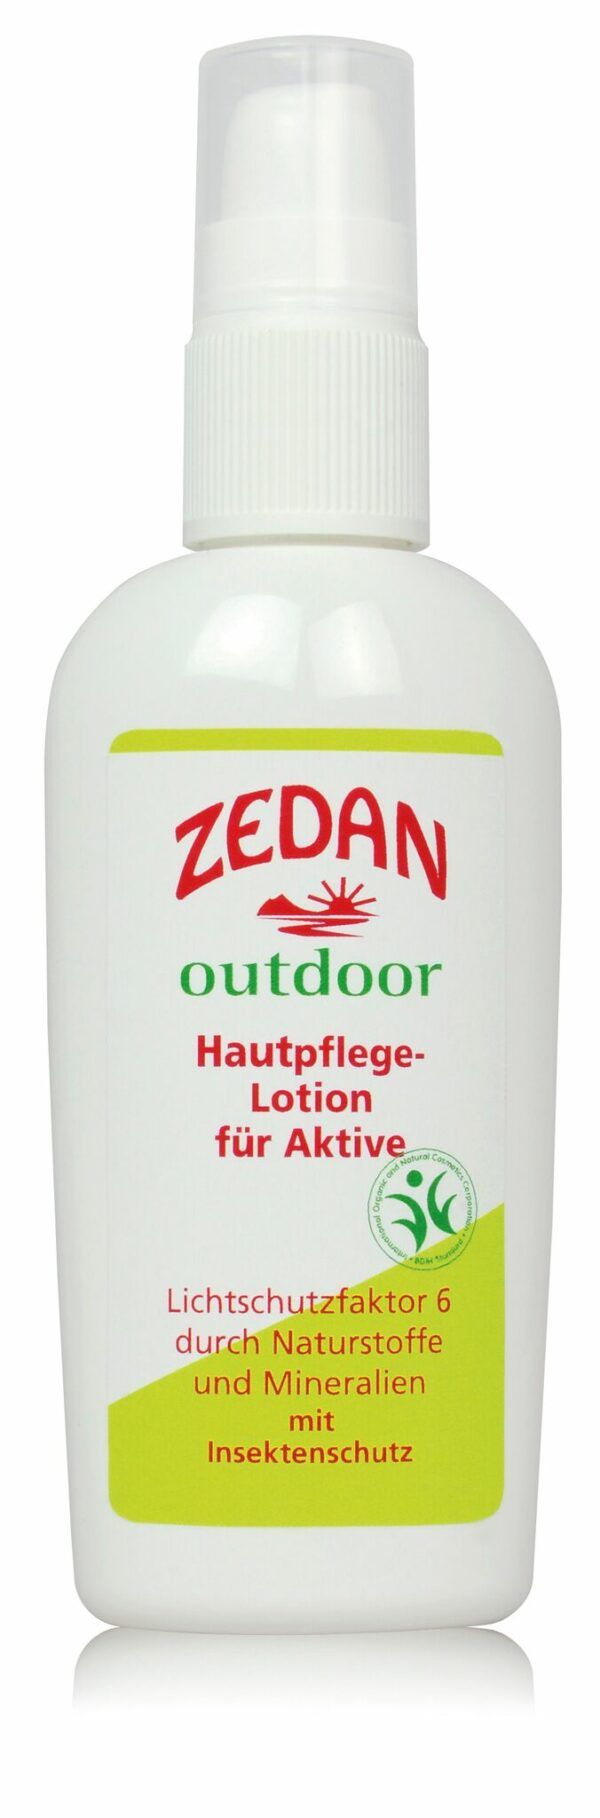 ZEDAN outdoor Lotion für Aktive - LSF 6 mit Insektenschutz 100ml